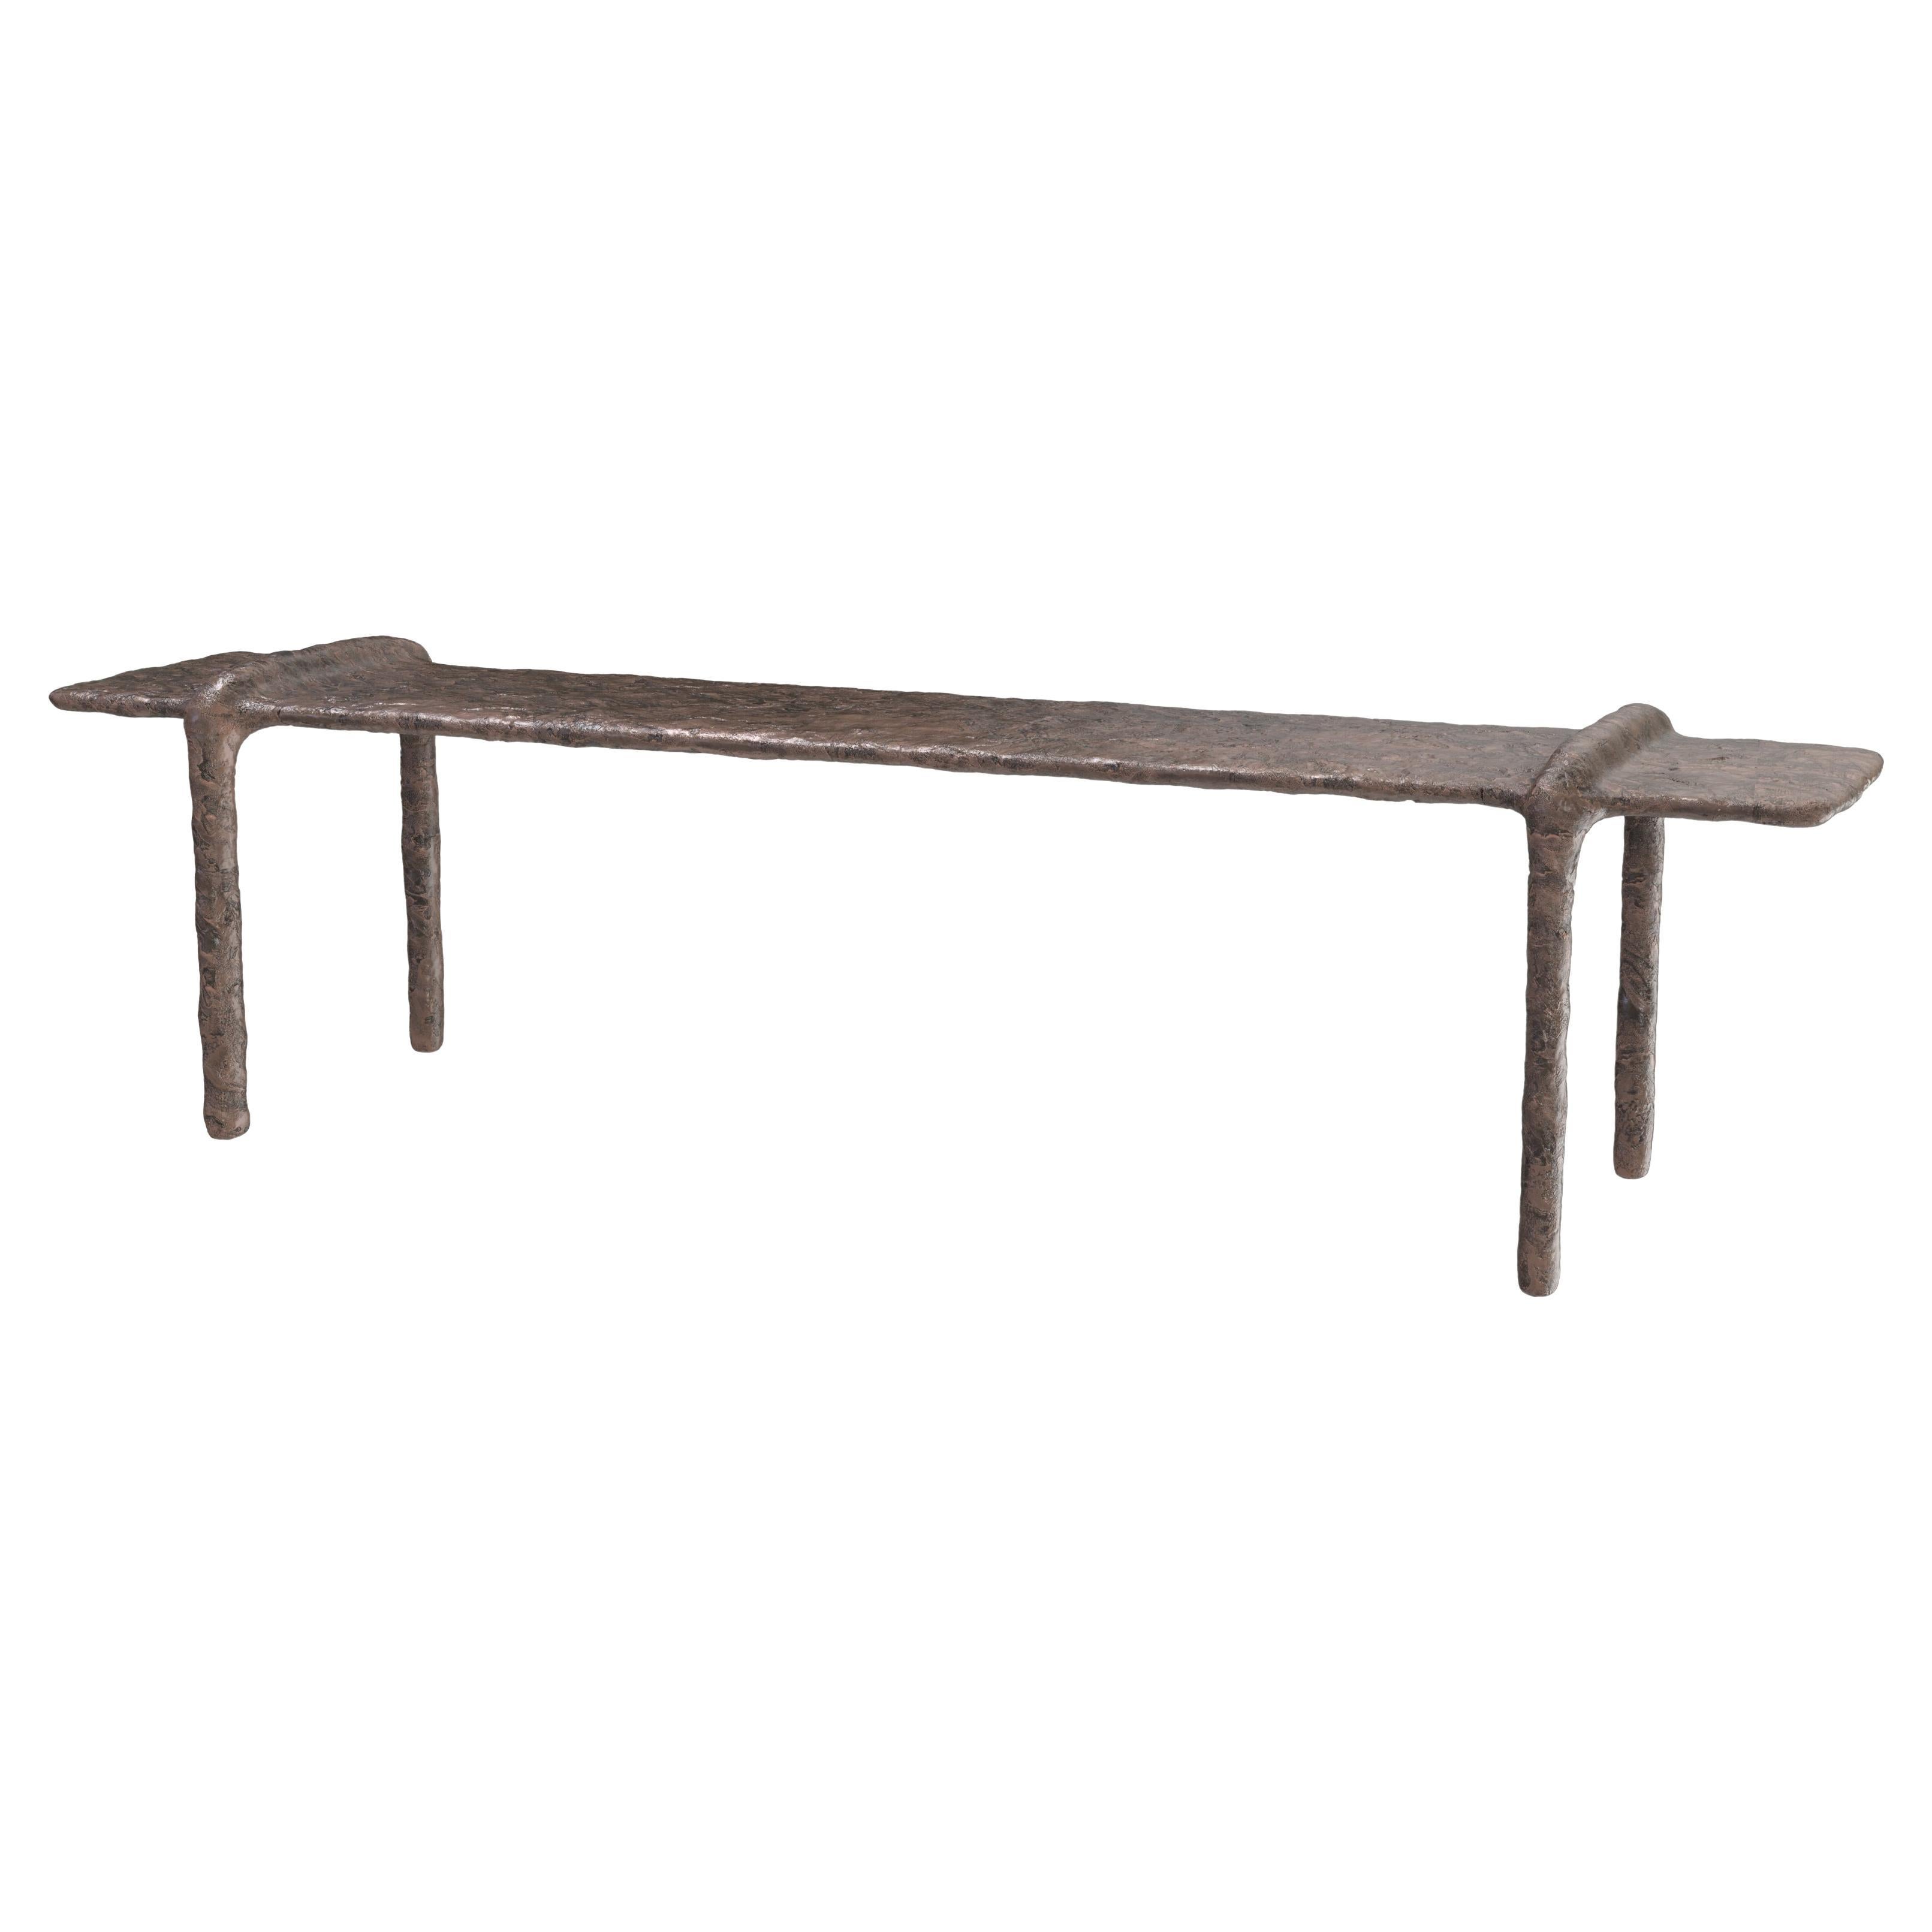 Contemporary Limited Edition Bronze Low Table, Ala V2 by Edizione Limitata